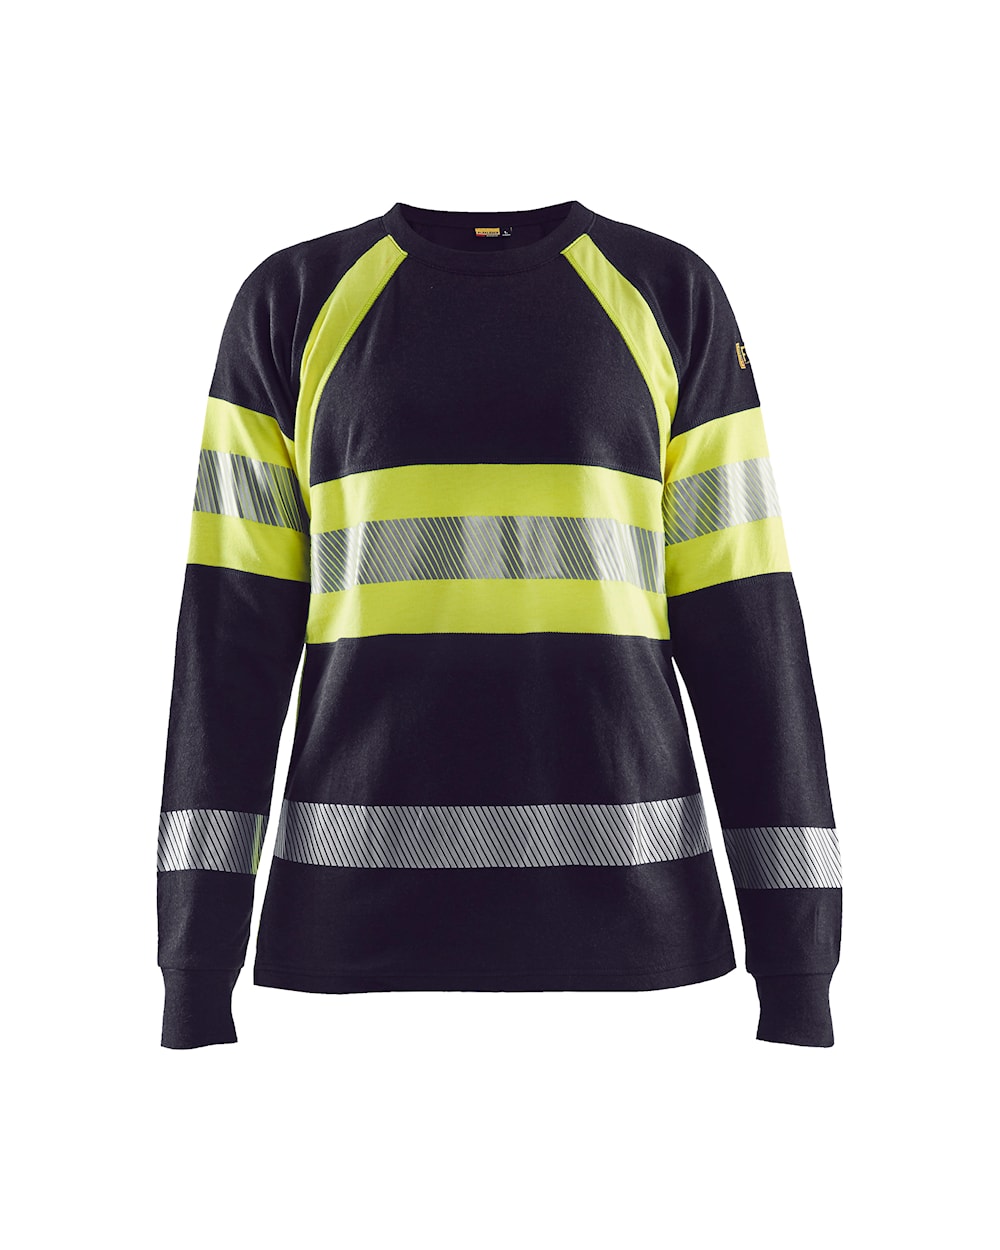 Blaklader Flame Resistant Long Sleeved Women's T-Shirt 3494